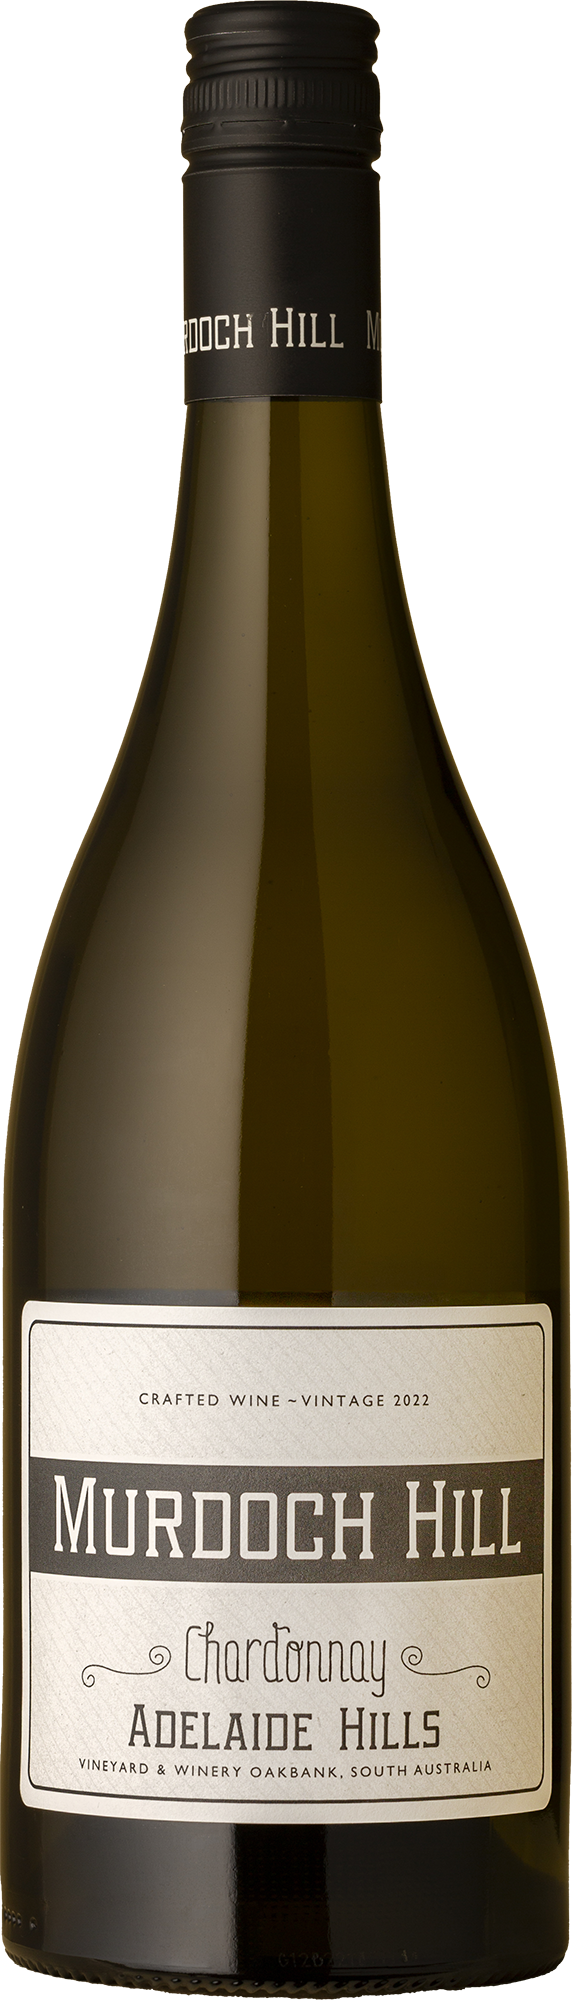 Murdoch Hill - Chardonnay 2022 White Wine